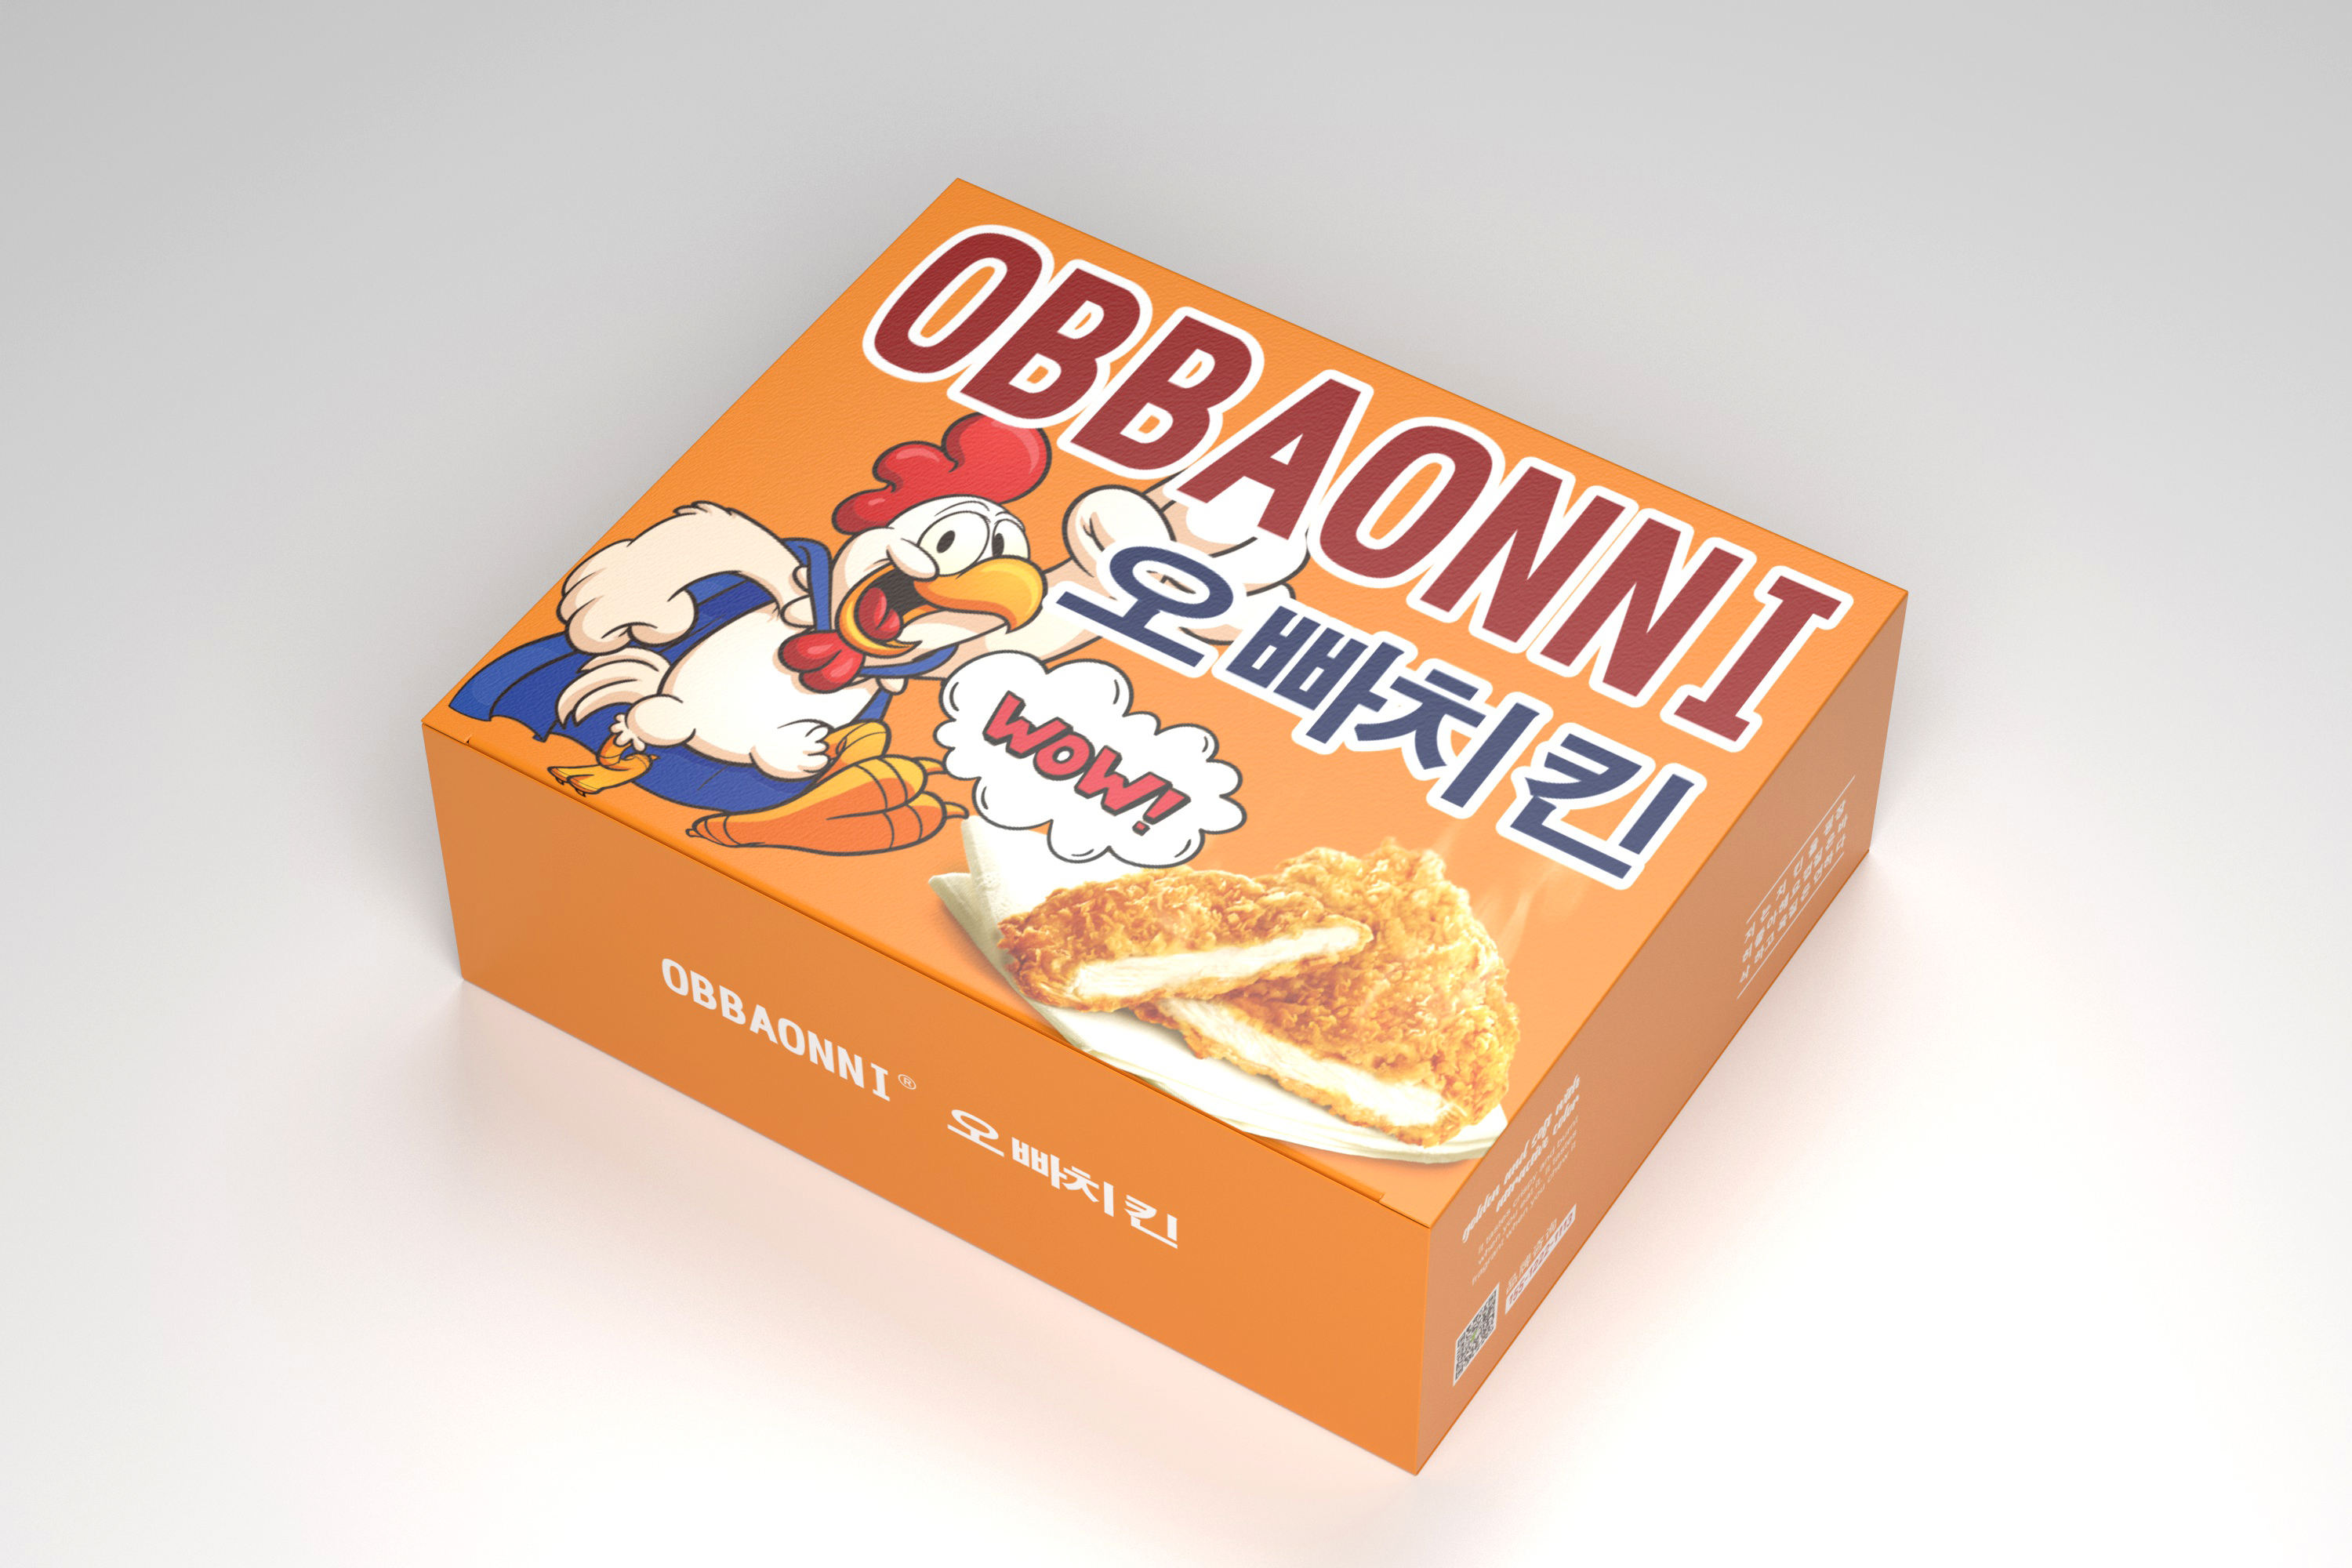 obbaonni炸鸡包装盒设计 飞特网 食品包装设计